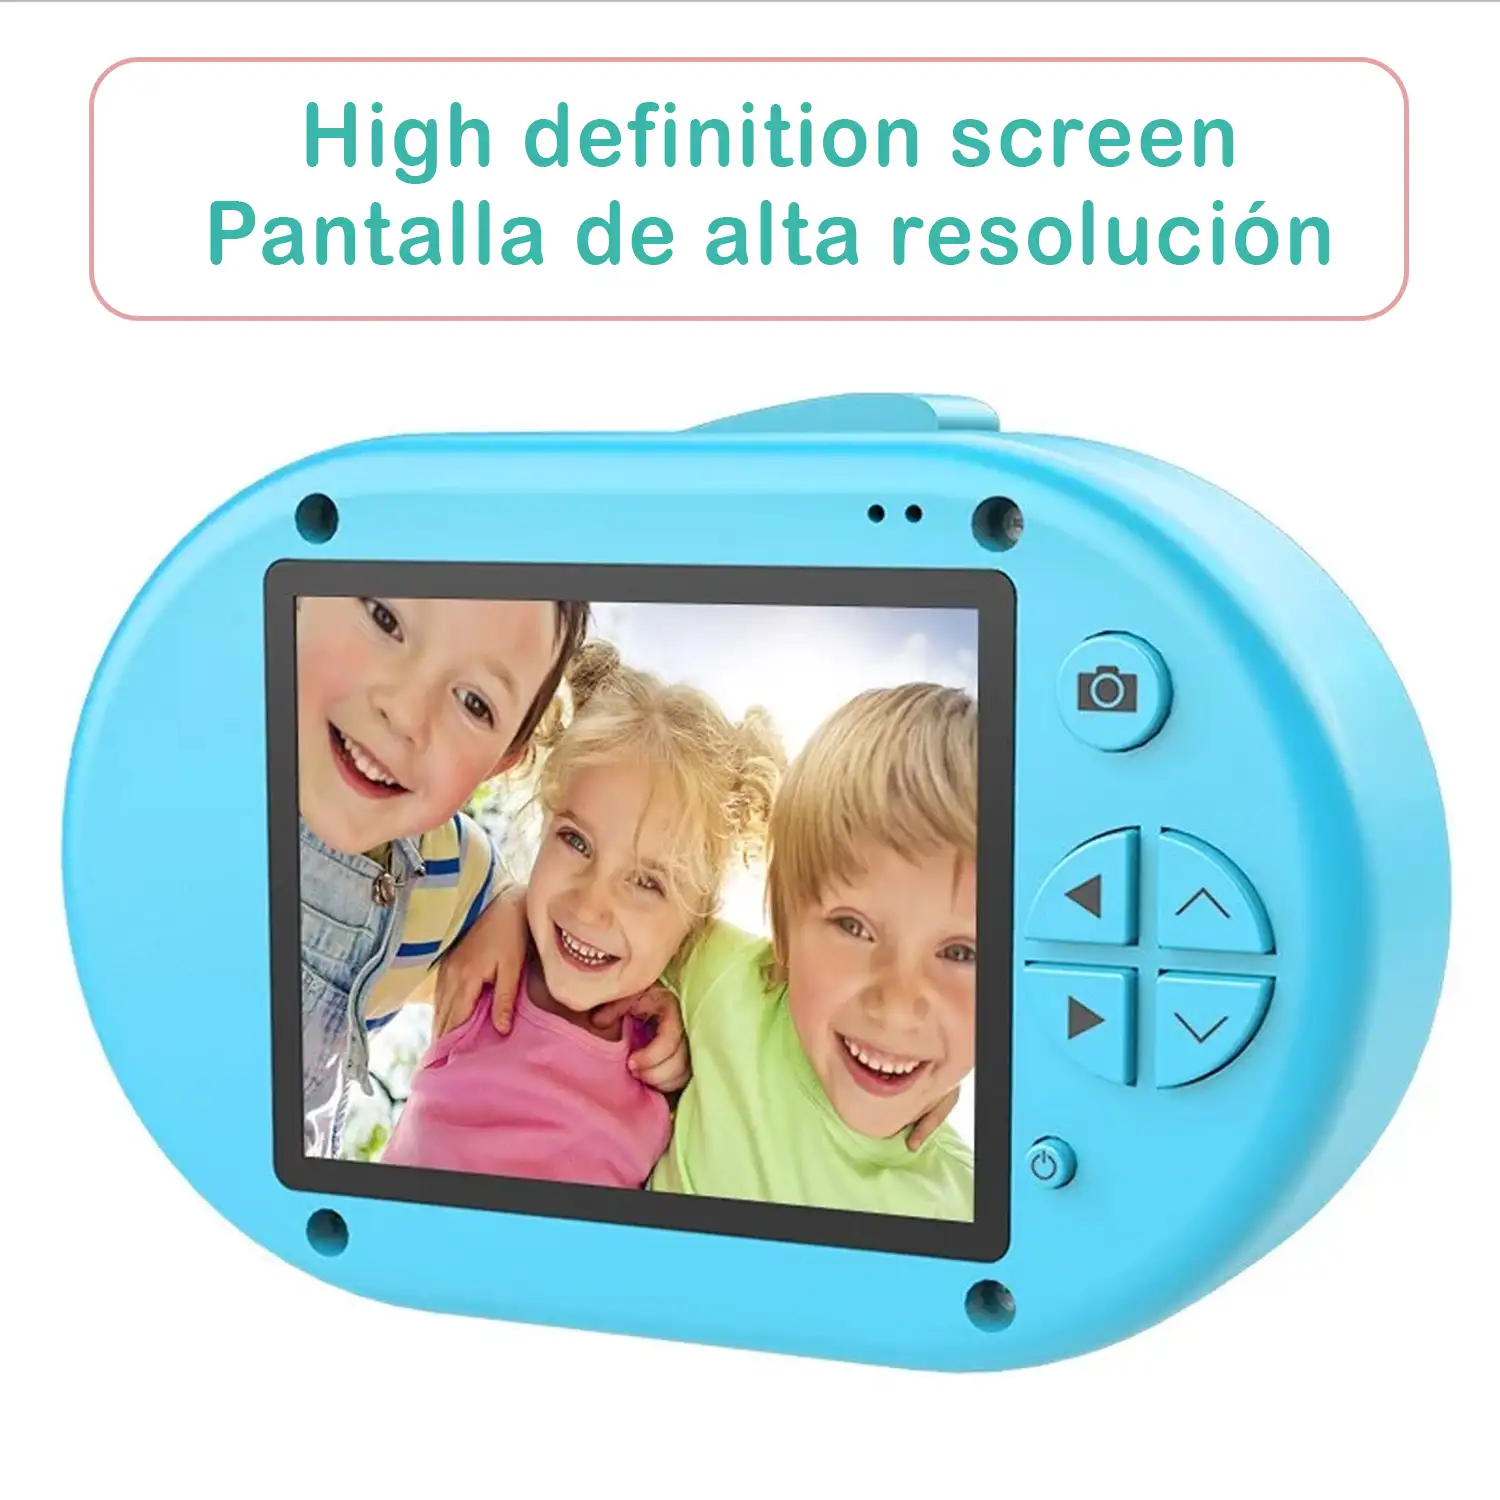 Cámara de fotos y videos para niños diseño pajarito. Full HD1080 y 12 megapíxeles